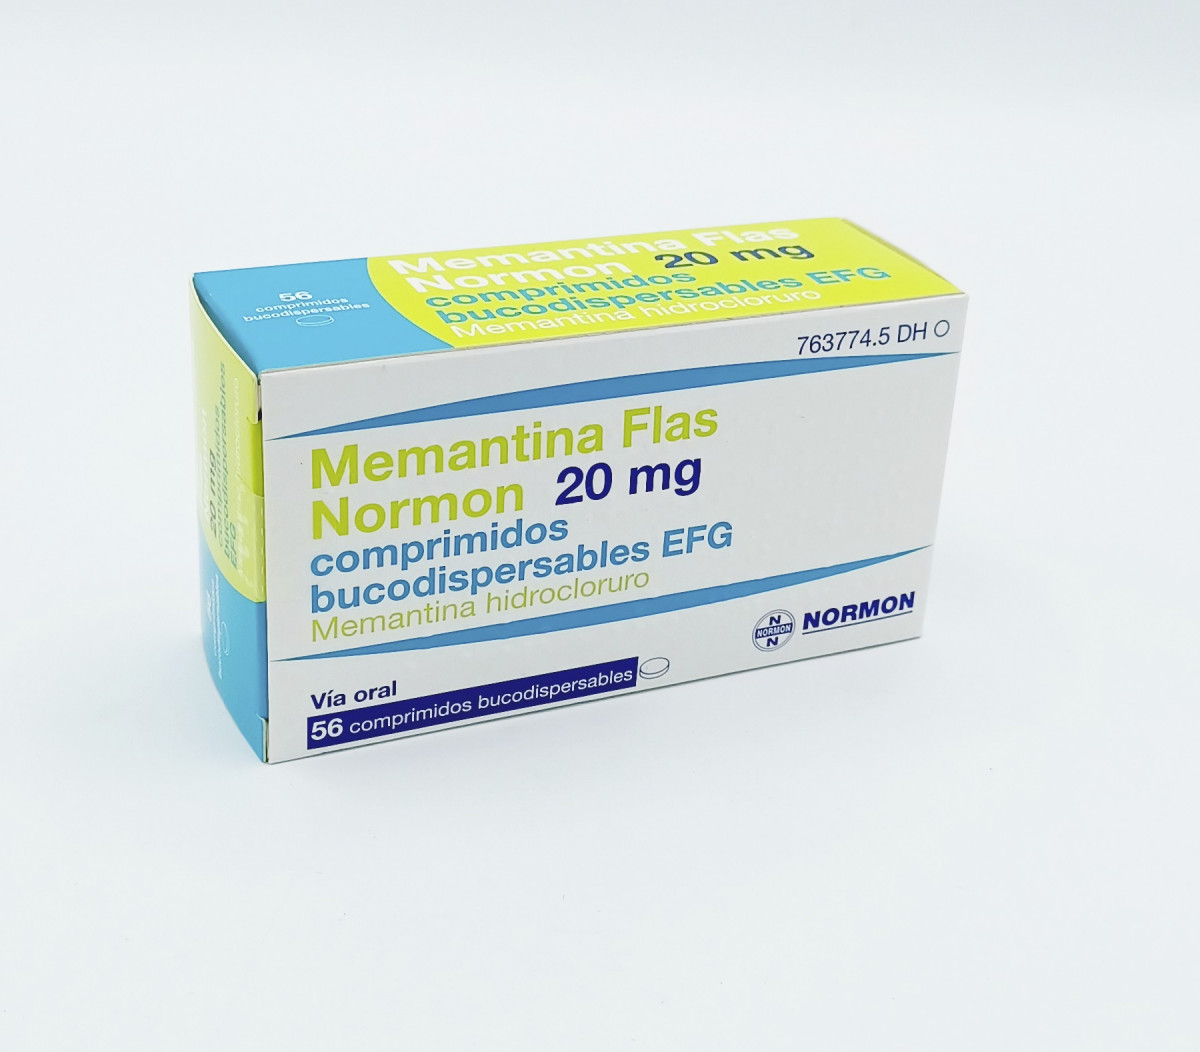 MEMANTINA FLAS NORMON 20 MG COMPRIMIDOS BUCODISPERSABLES EFG, 56 comprimidos fotografía del envase.